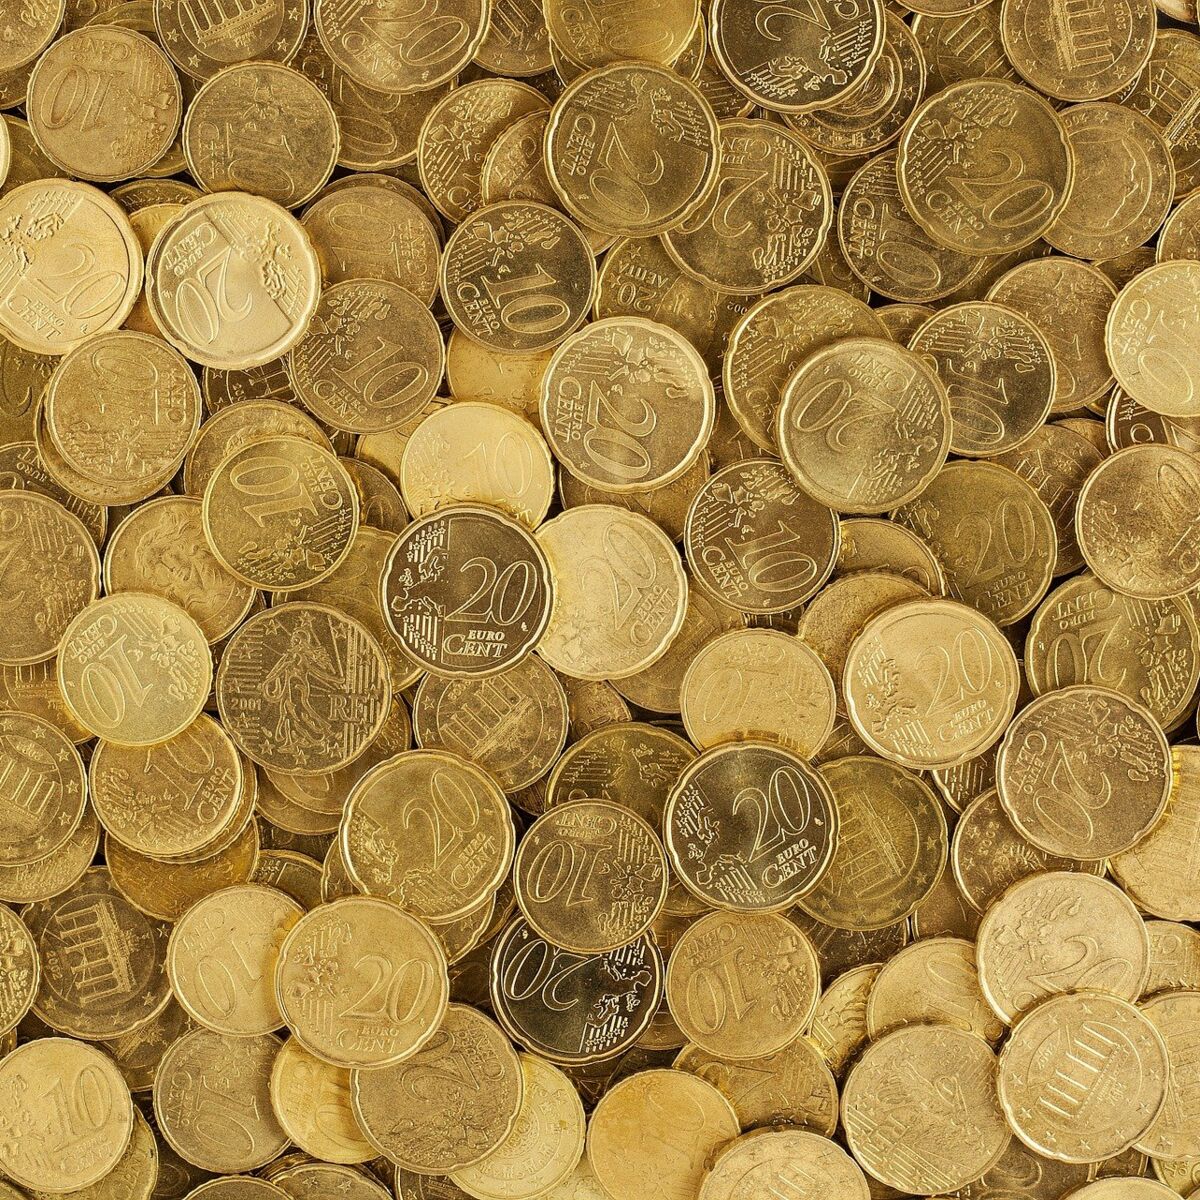 Vos vieille pièces valent peut-être de l'or!